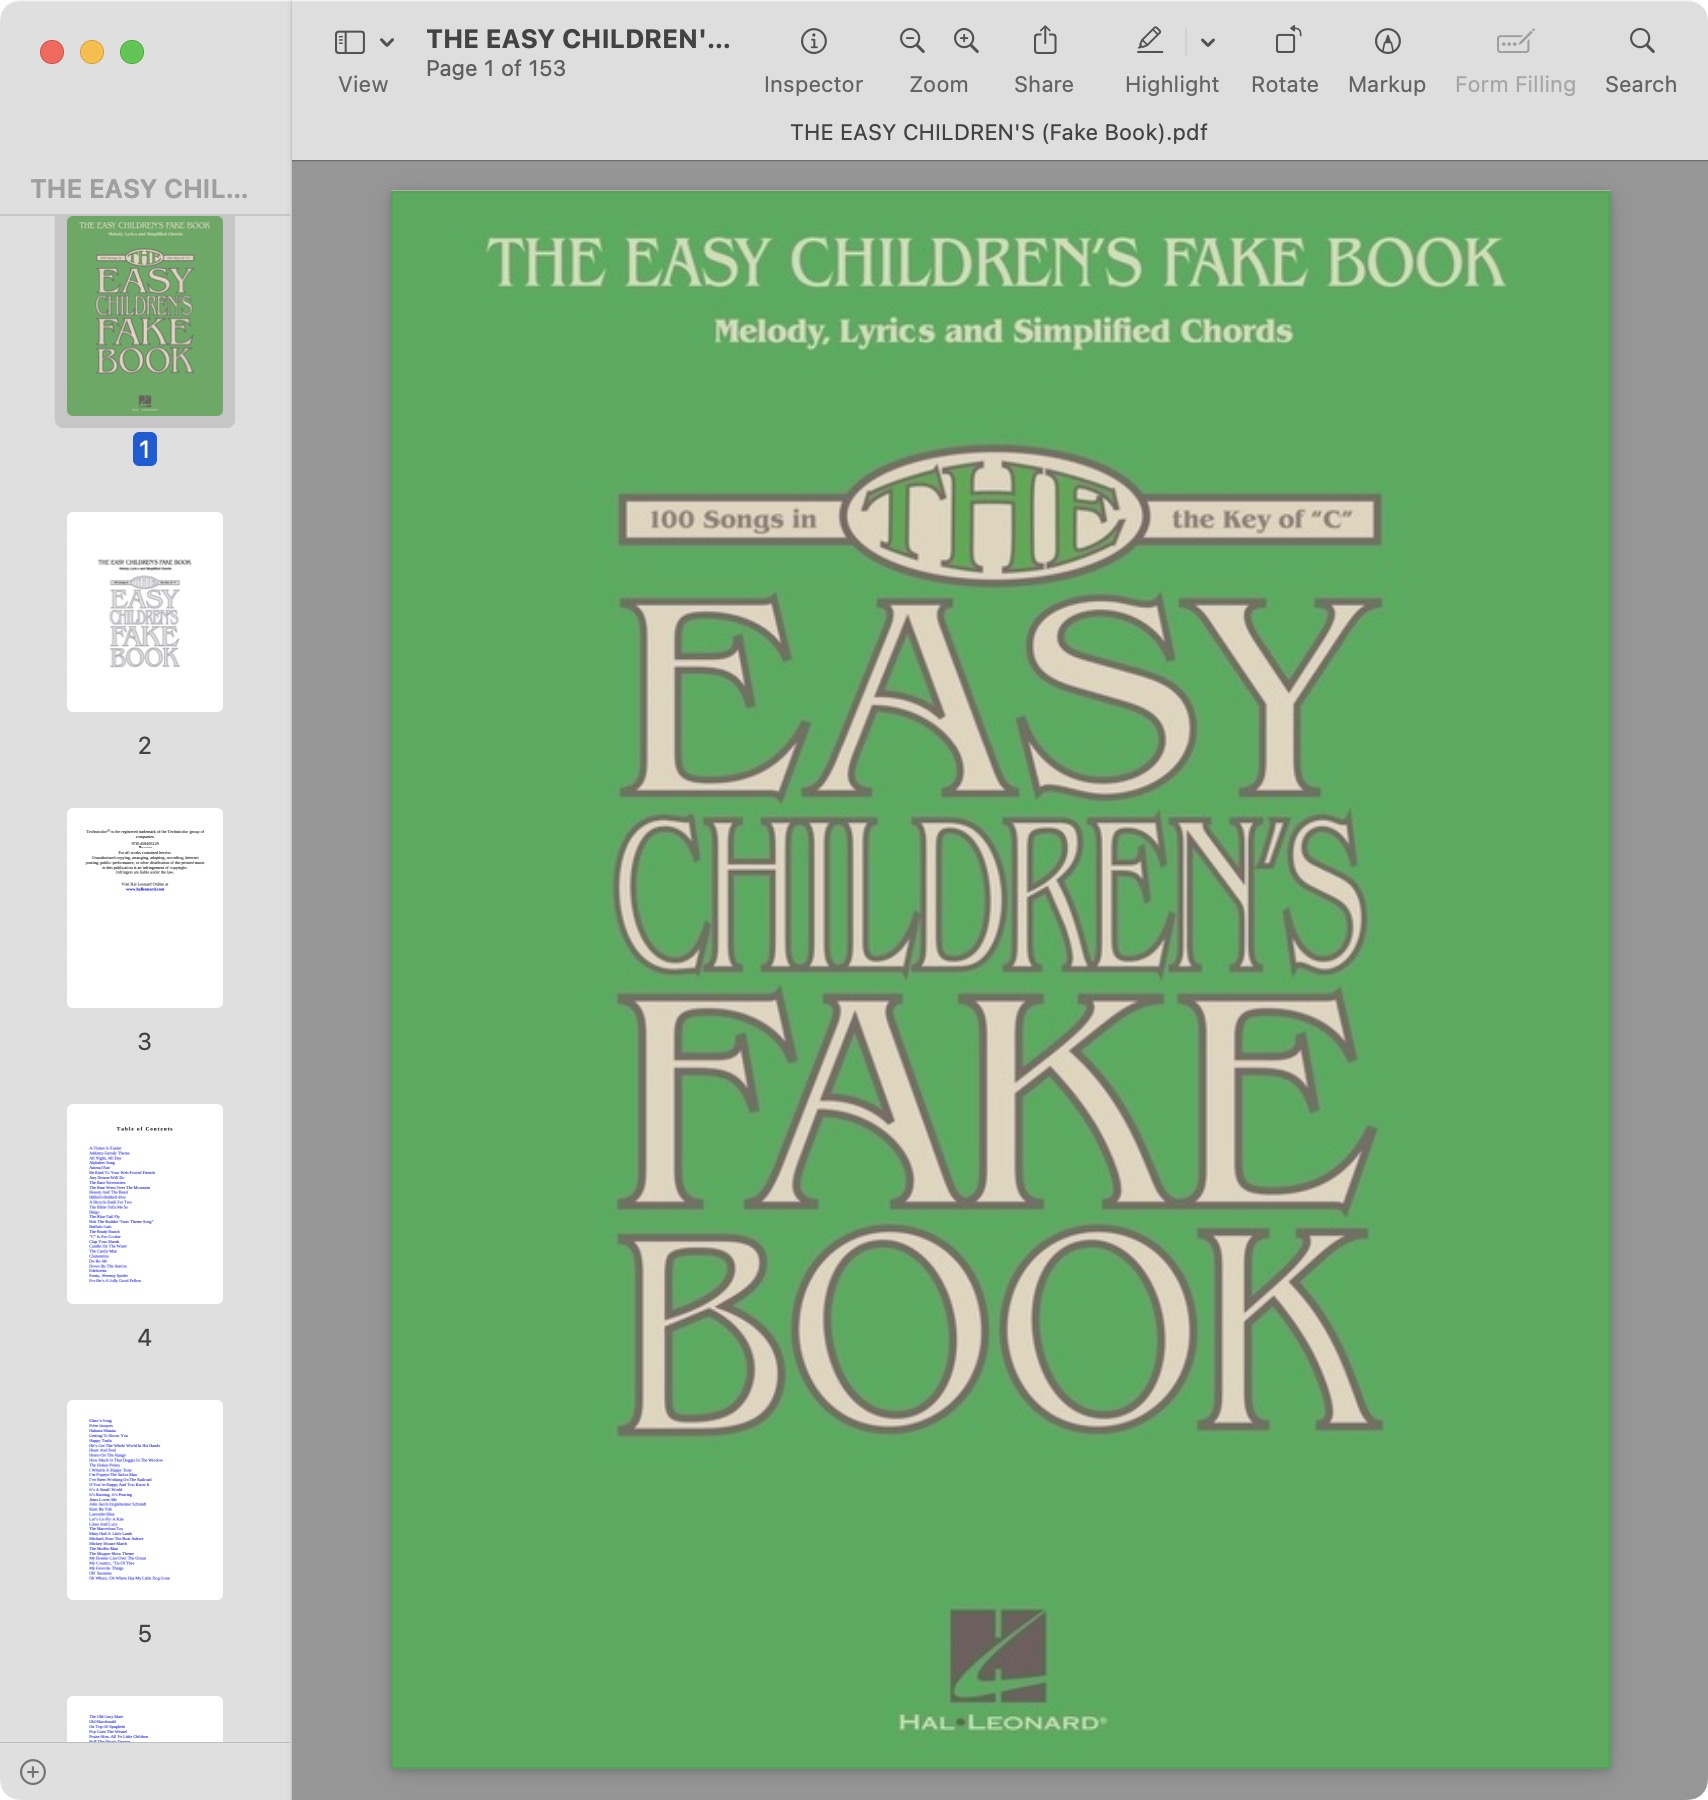 THE EASY CHILDREN'S (Fake Book).jpg